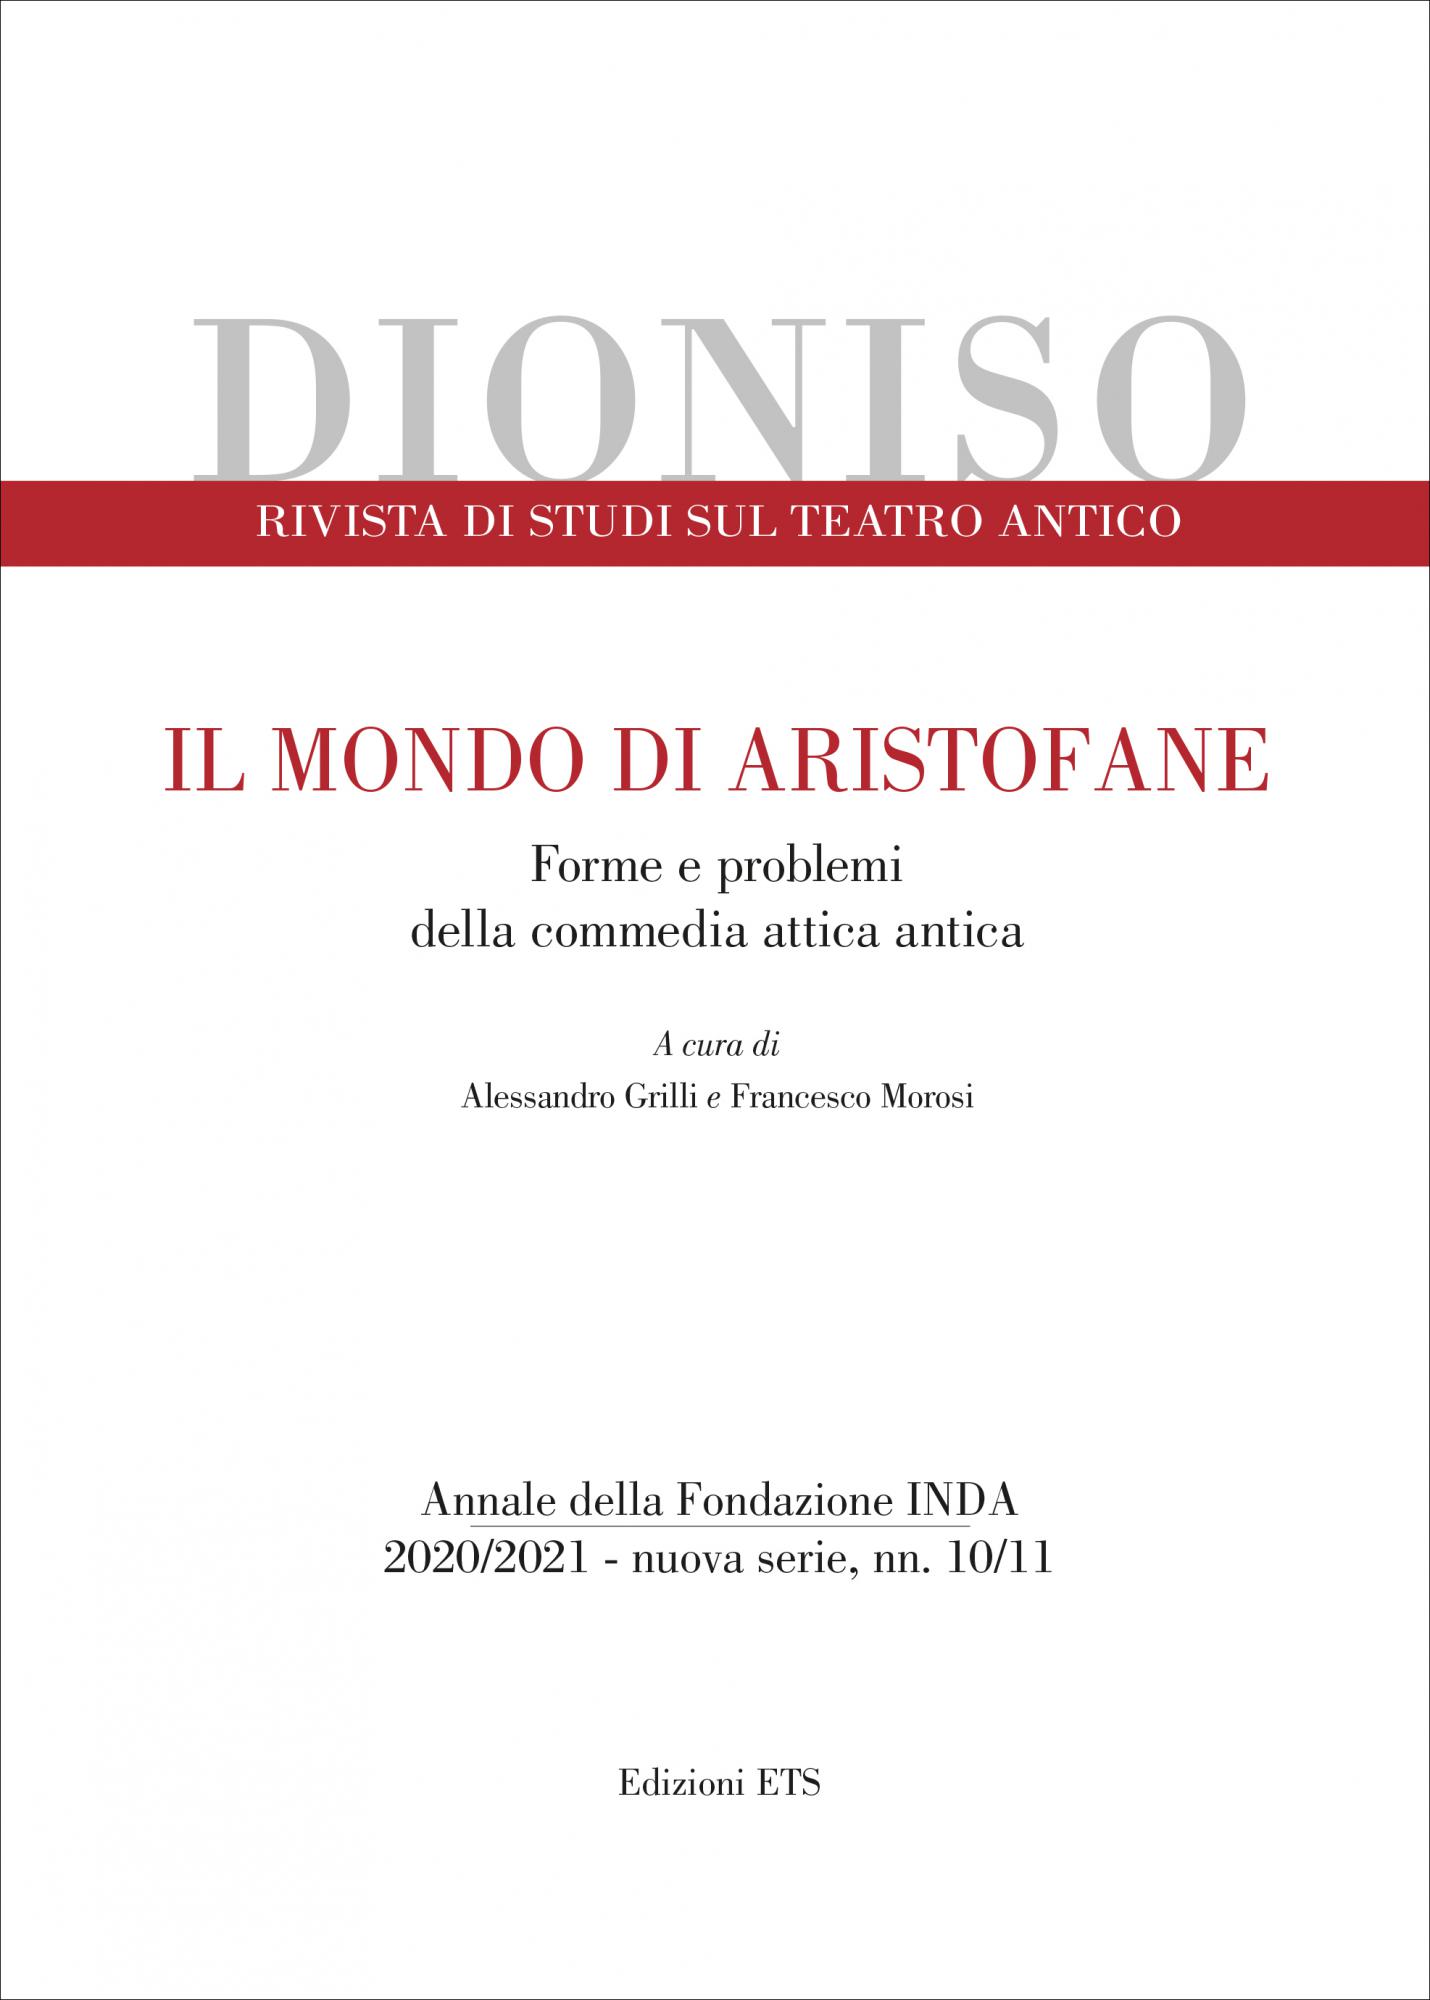 Dioniso <br />2020/2021 <br />IL MONDO DI ARISTOFANE.Forme e problemi  della commedia attica antica